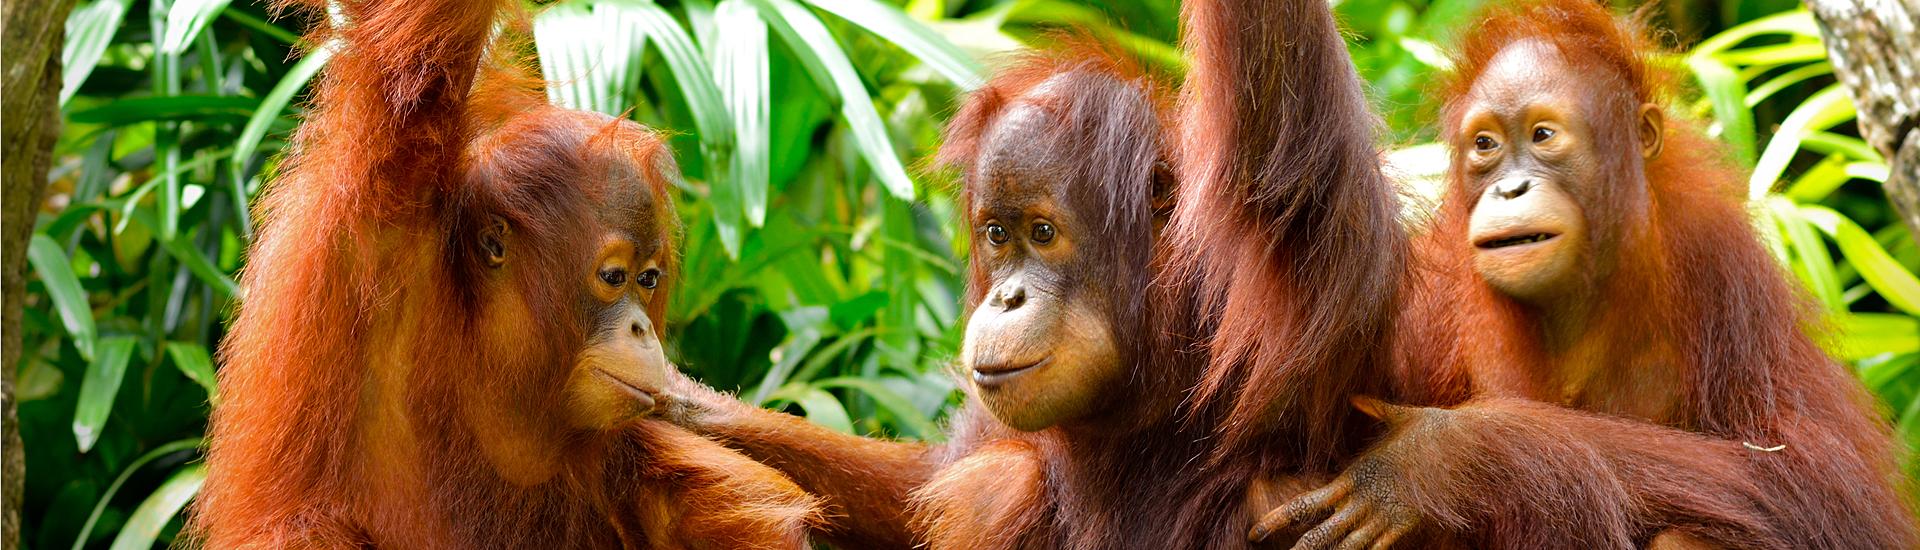 W krainie duchów i orangutanów